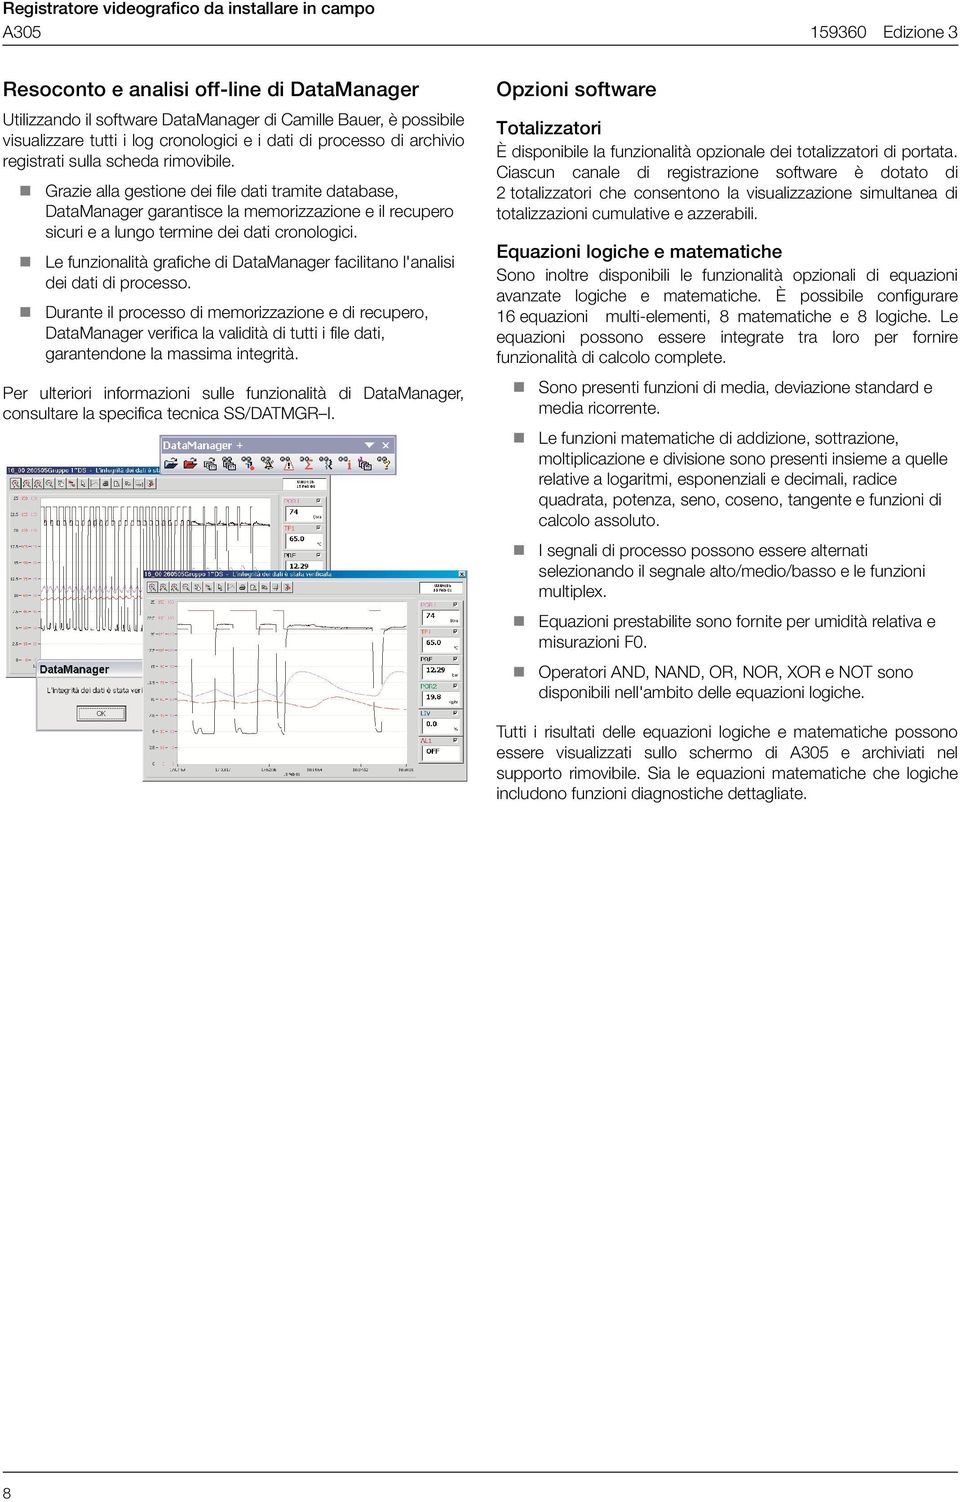 ! Le funzionalità grafiche di DataManager facilitano l'analisi dei dati di processo.